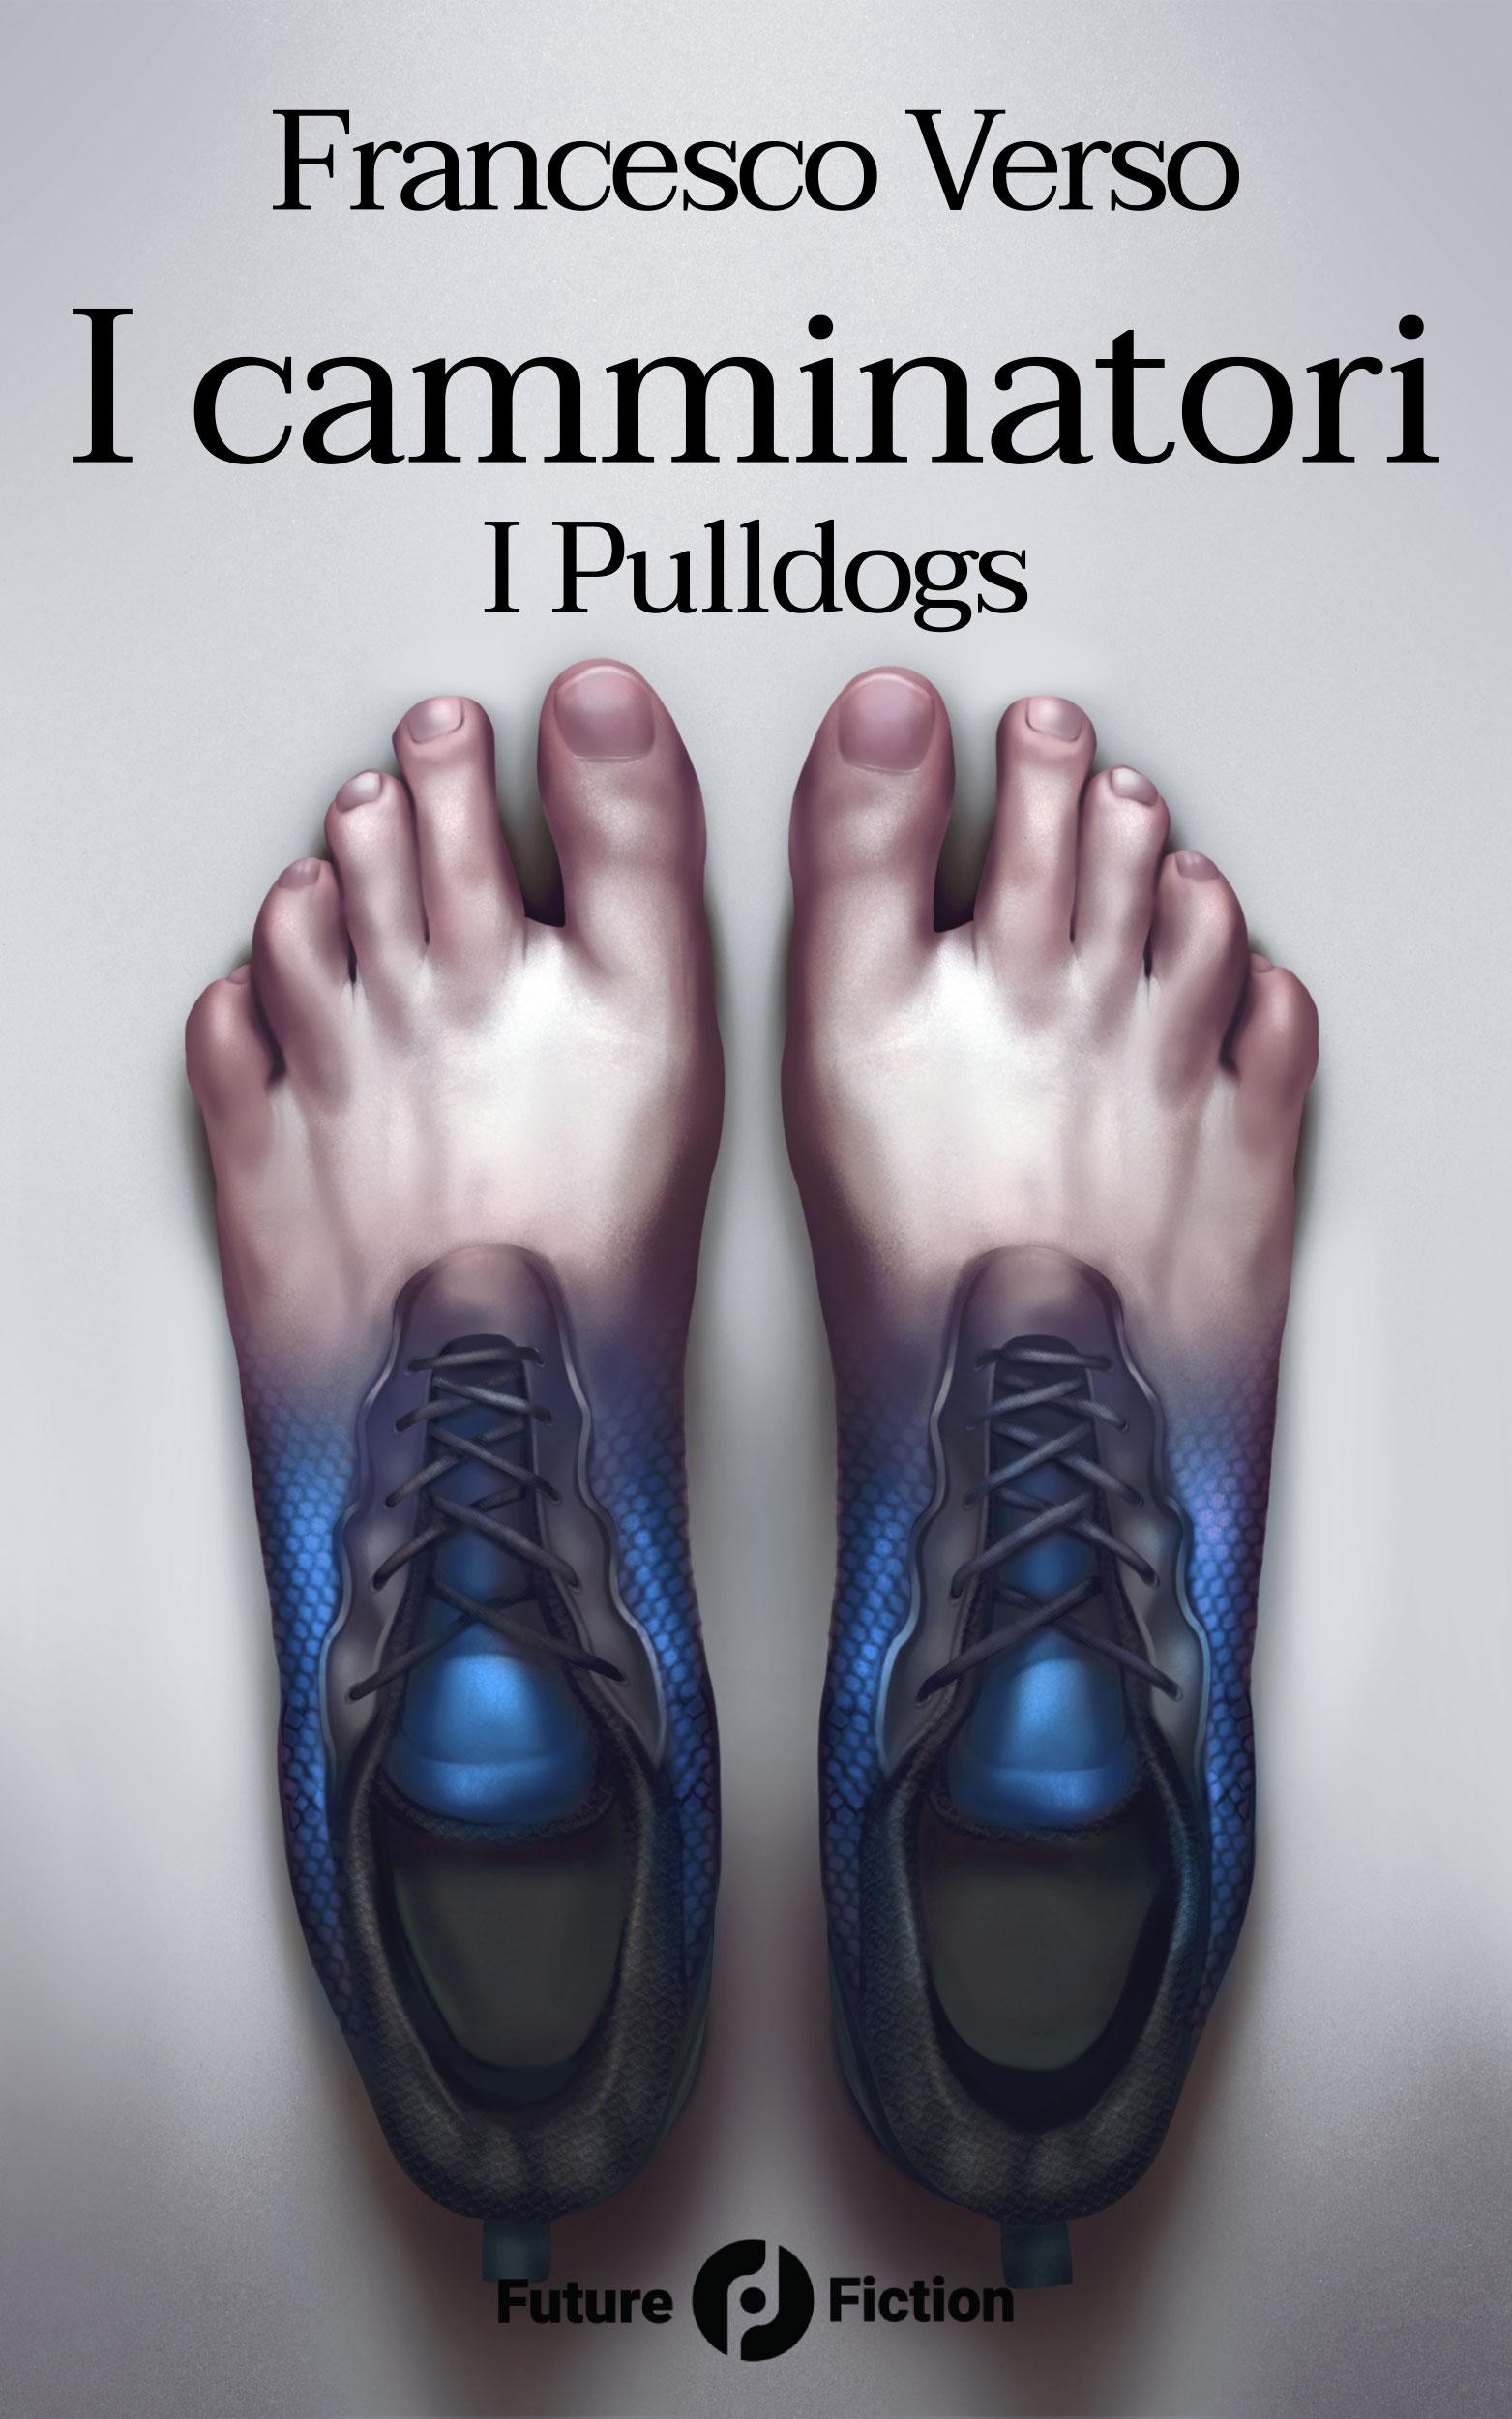 Satyros - I Camminatori: Vol. 1 - I Pulldogs, Di Francesco Verso (Future Fiction, 2018)